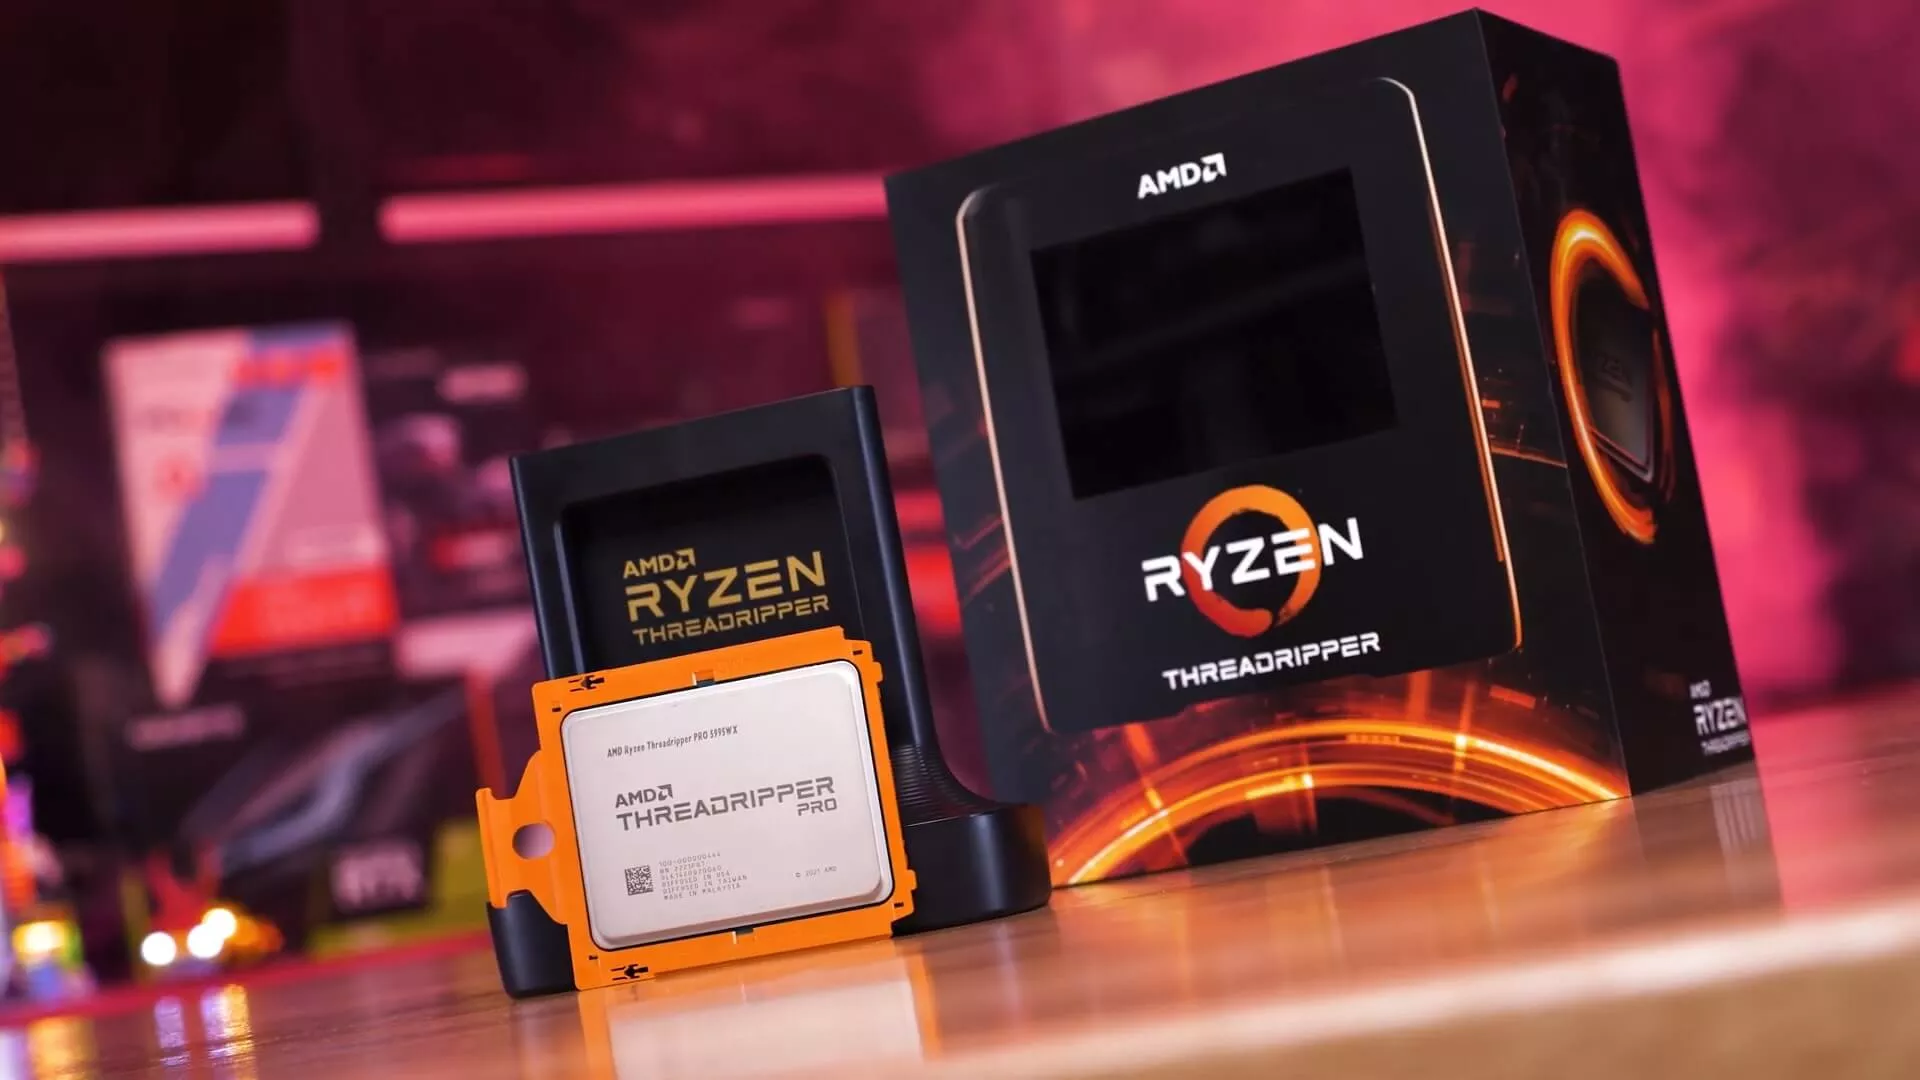 AMD Ryzen Threadripper Pro 5995WX Review